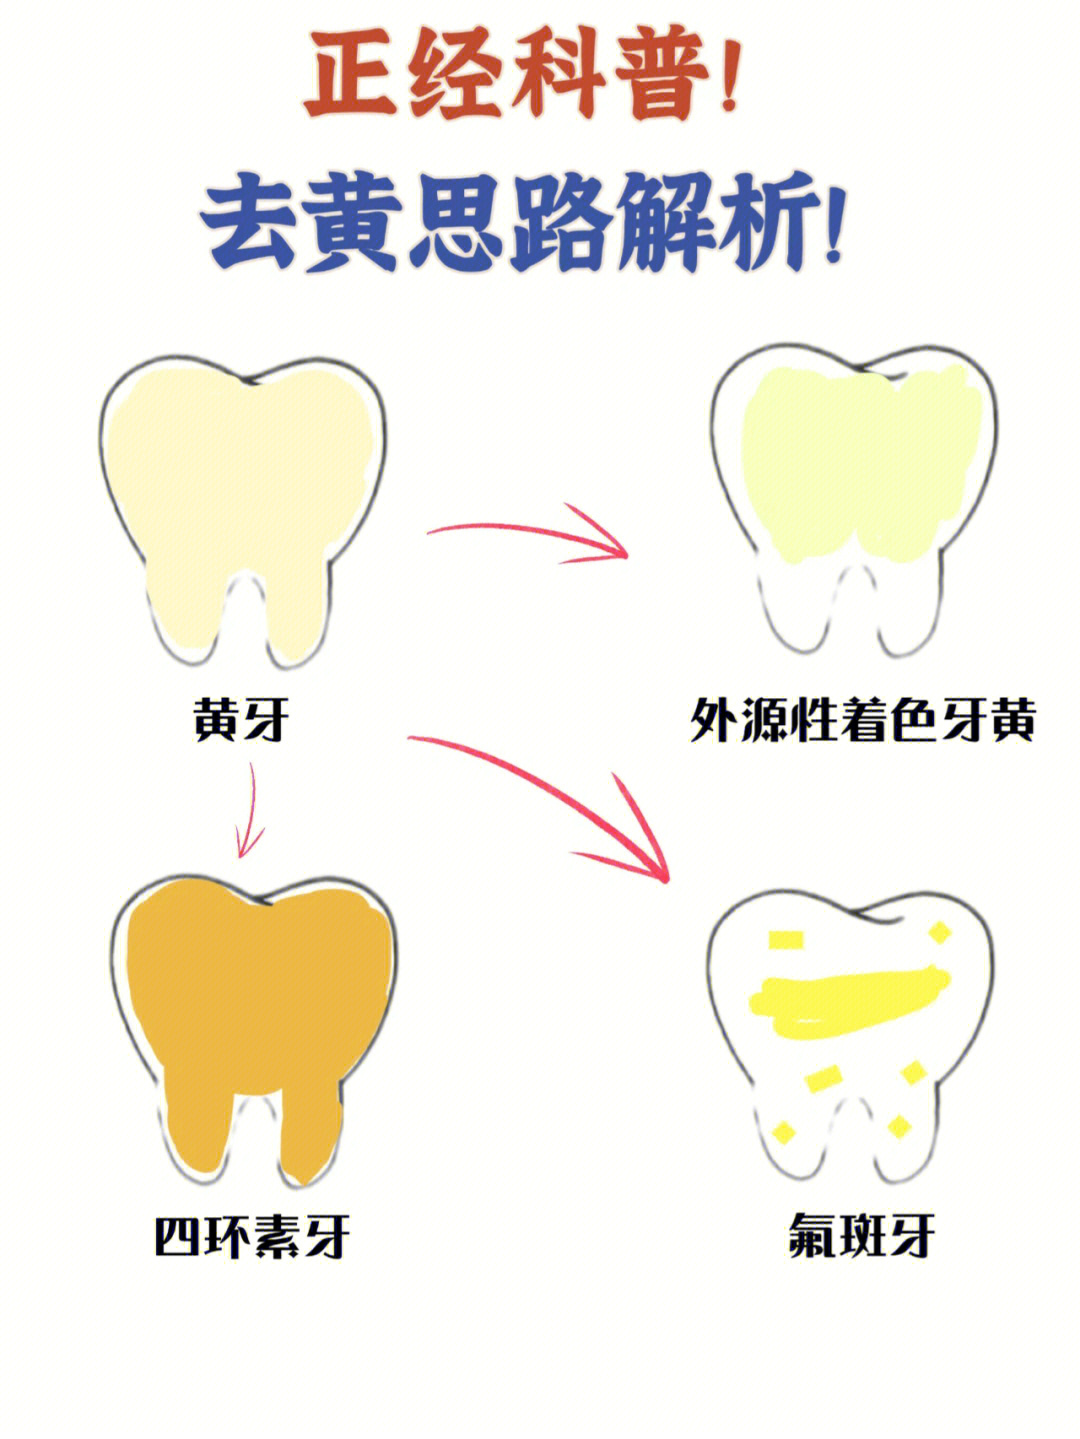 大黄牙怎么变成大白牙图片